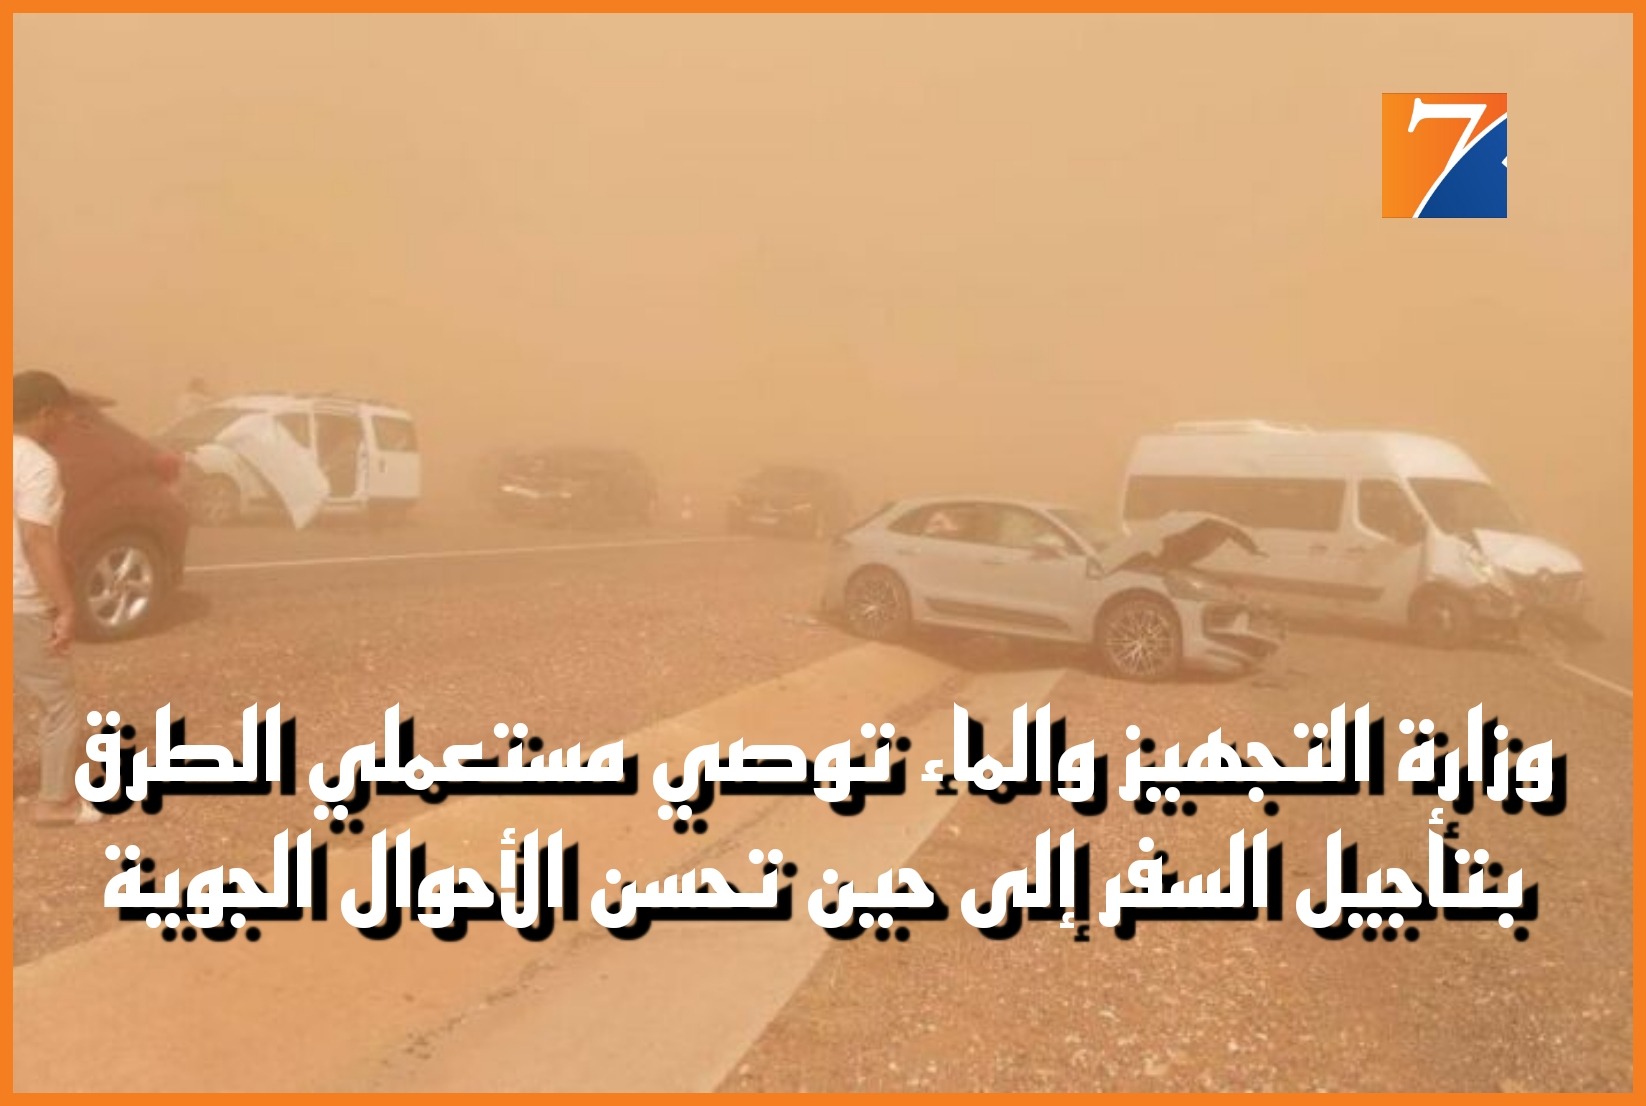 وزارة التجهيز والماء توصي مستعملي الطرق بتأجيل السفر إلى حين تحسن الأحوال الجوية